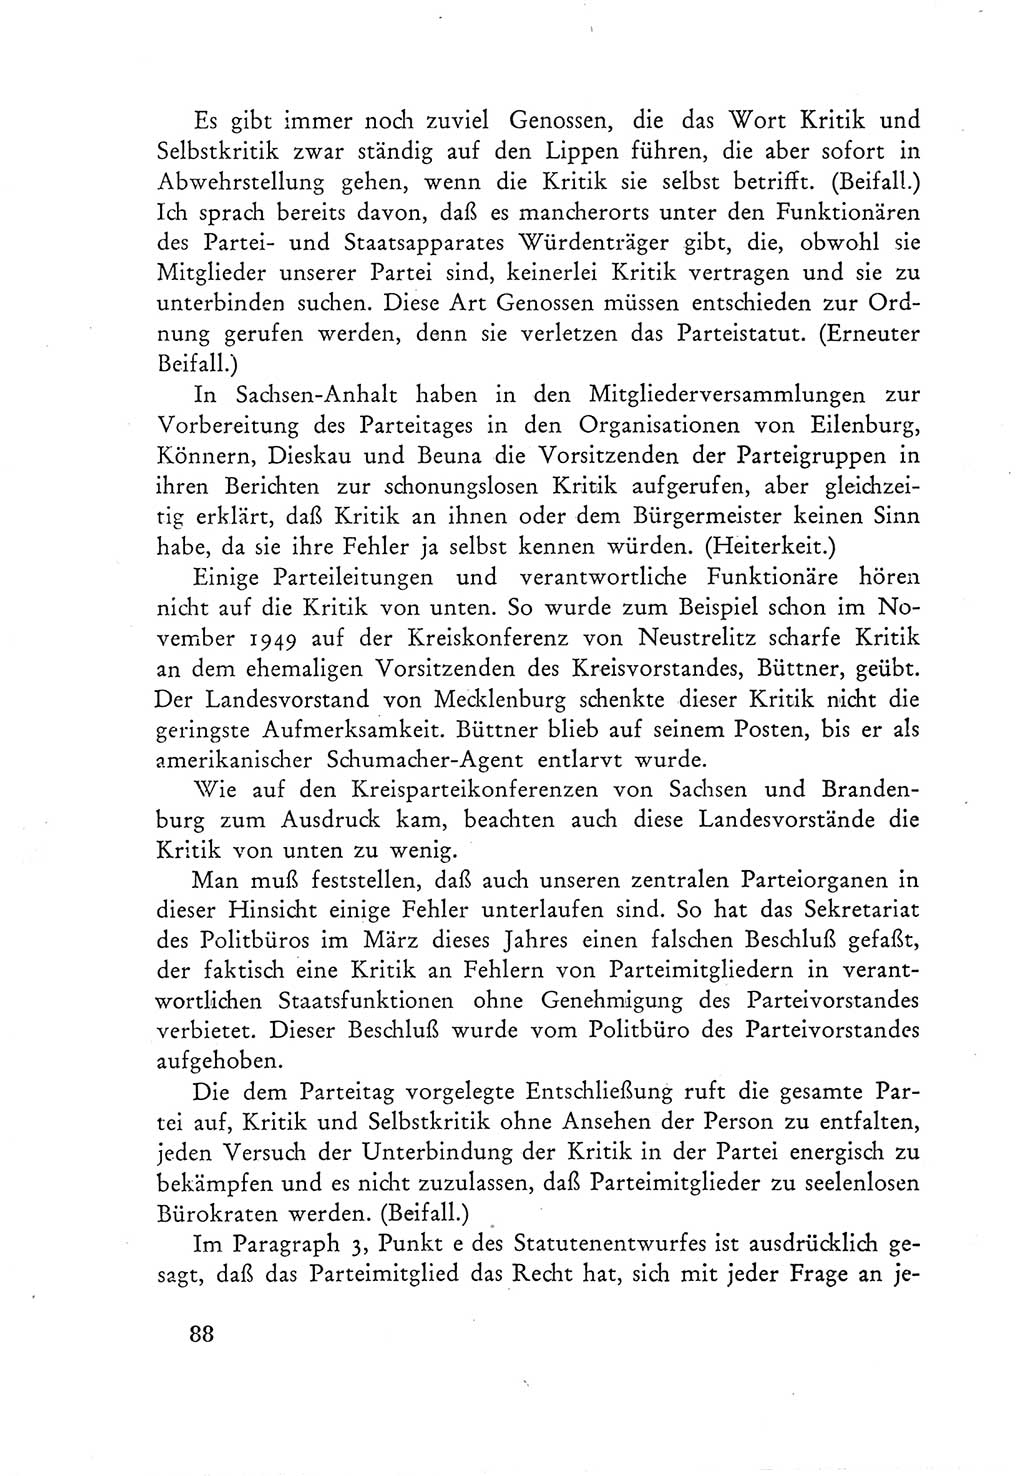 Protokoll der Verhandlungen des Ⅲ. Parteitages der Sozialistischen Einheitspartei Deutschlands (SED) [Deutsche Demokratische Republik (DDR)] 1950, Band 1, Seite 88 (Prot. Verh. Ⅲ. PT SED DDR 1950, Bd. 1, S. 88)